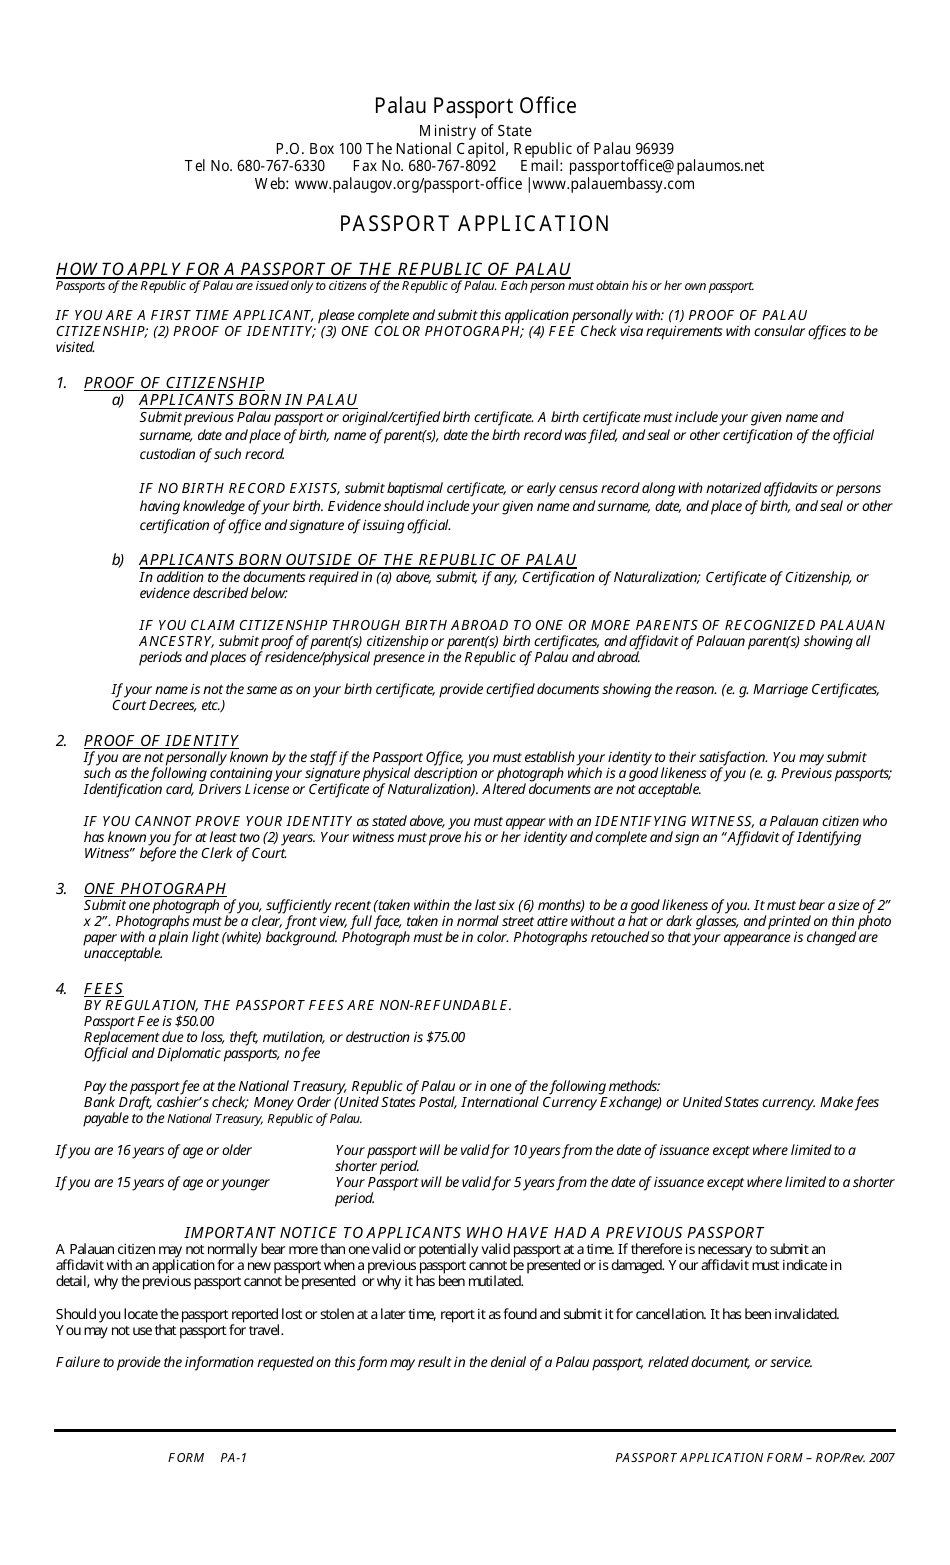 Form PA-1 Passport Application - Palau, Page 1